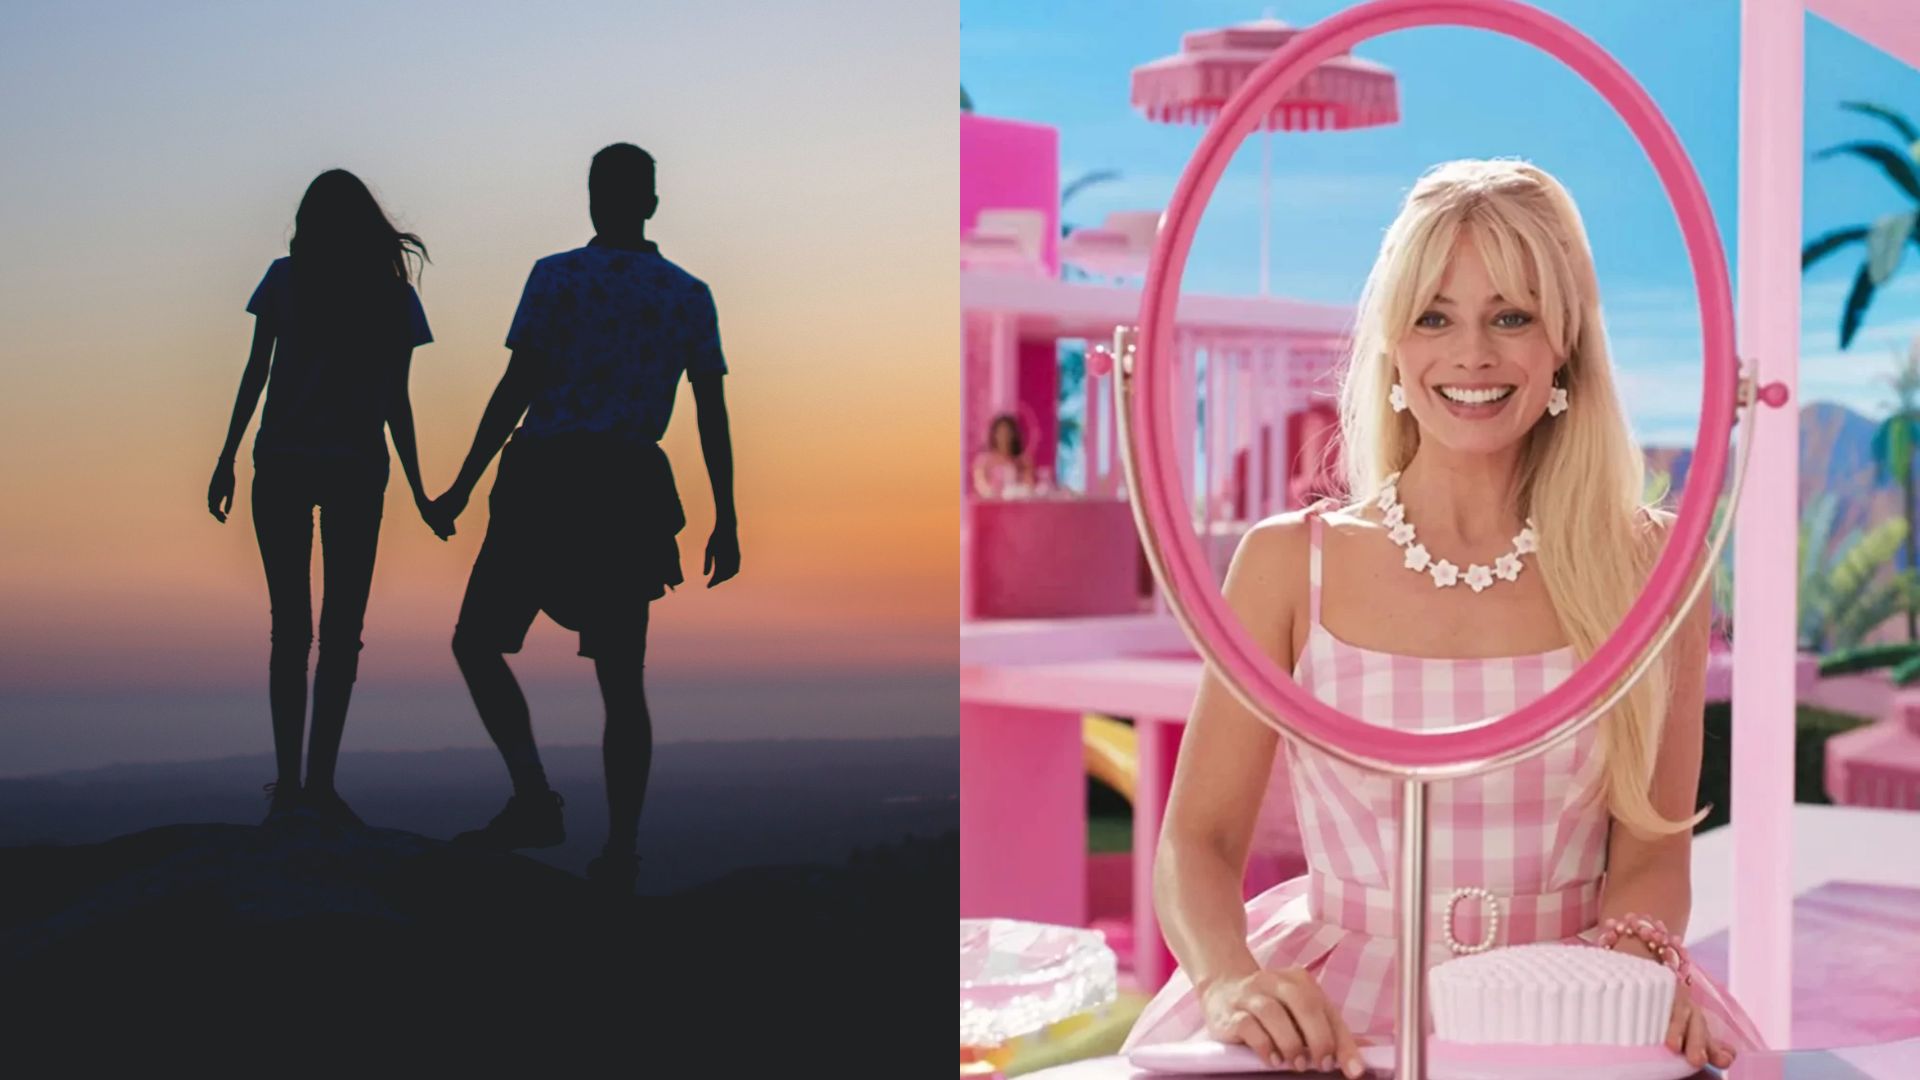 Mulher termina relacionamento após assistir ao filme da “Barbie” com namorado: “Foi a gota d’água”